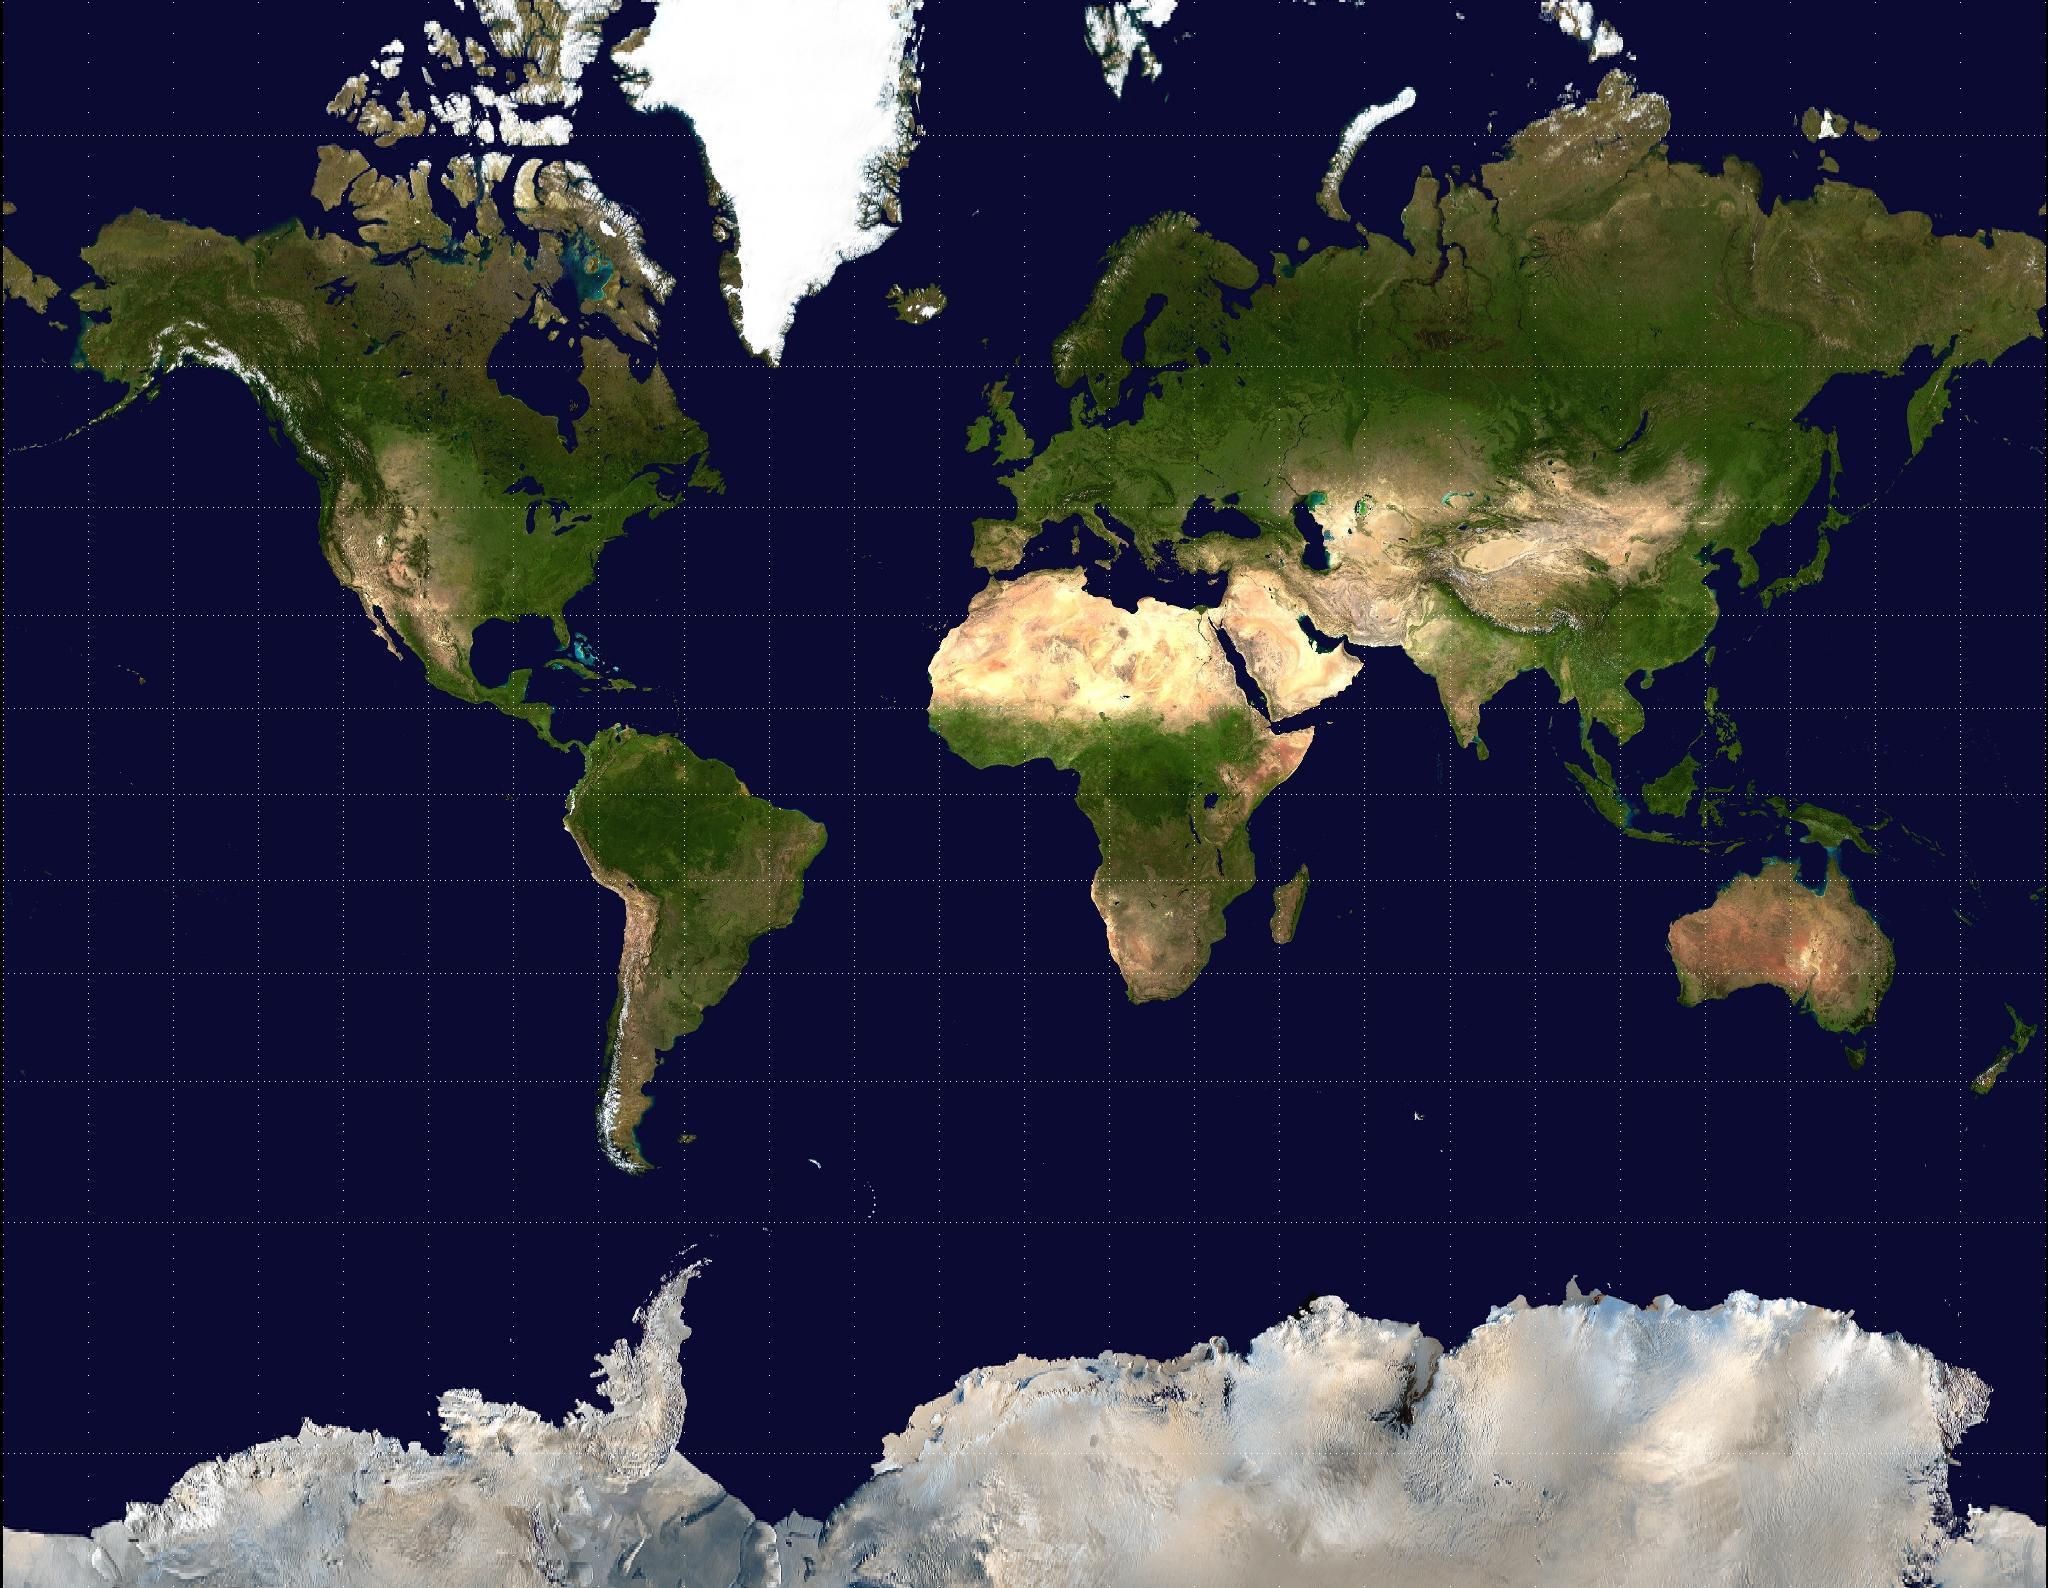 Planisphère du monde selon la Projection de Mercator